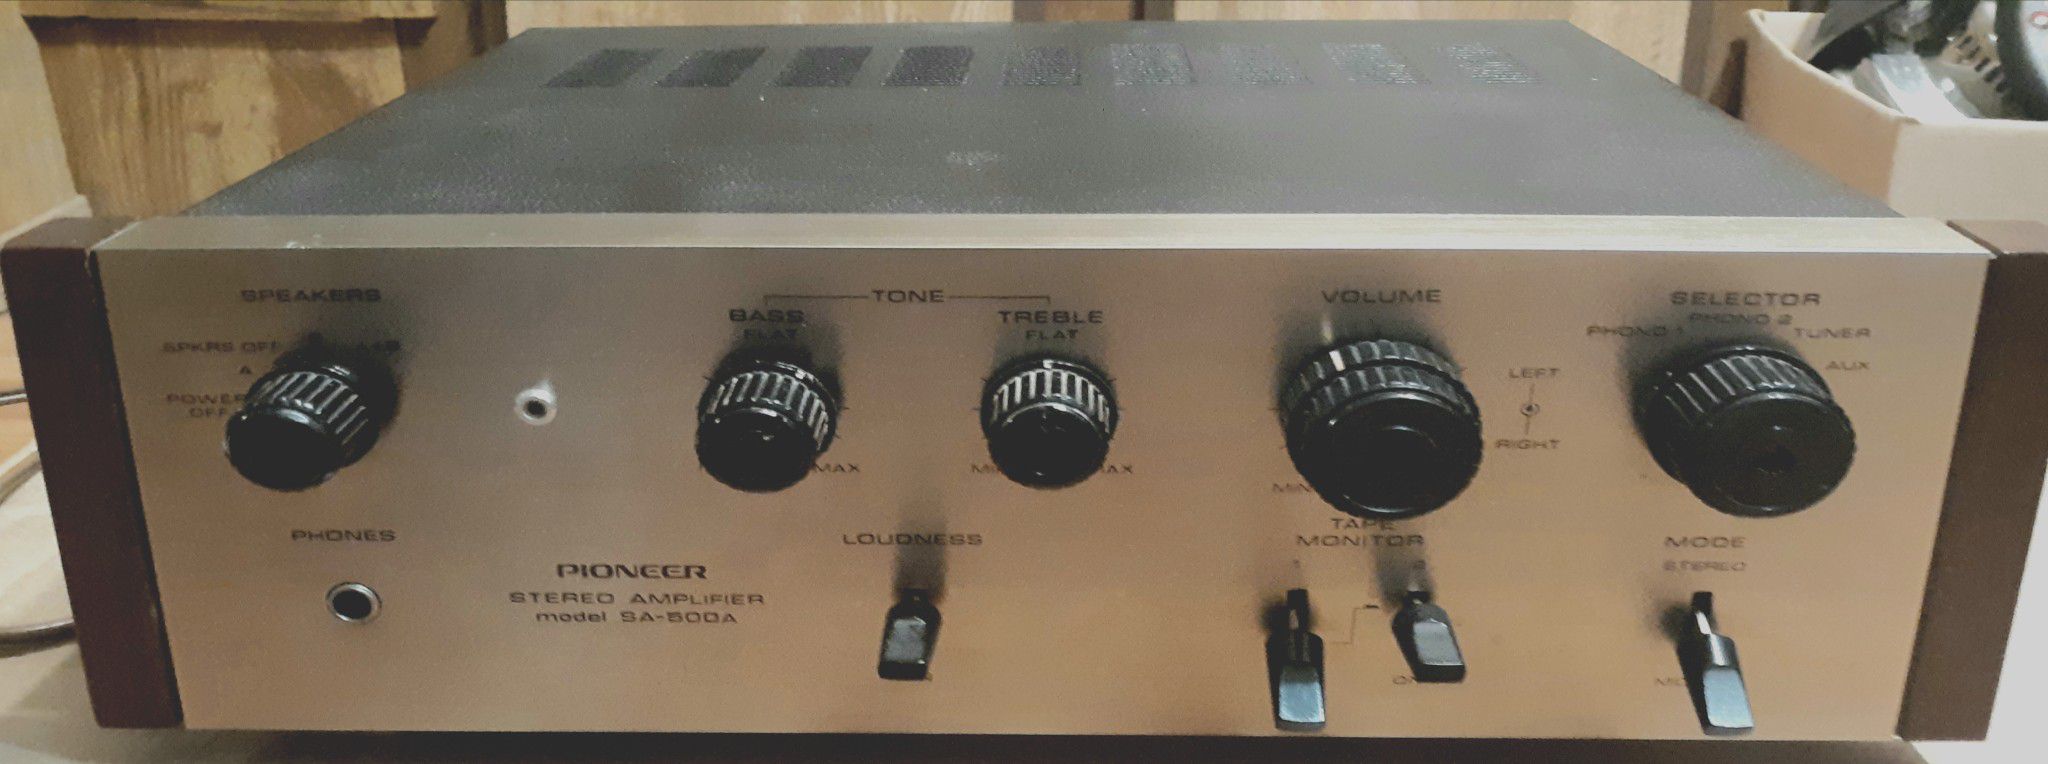 Pioneer amplifier model: SA-500A